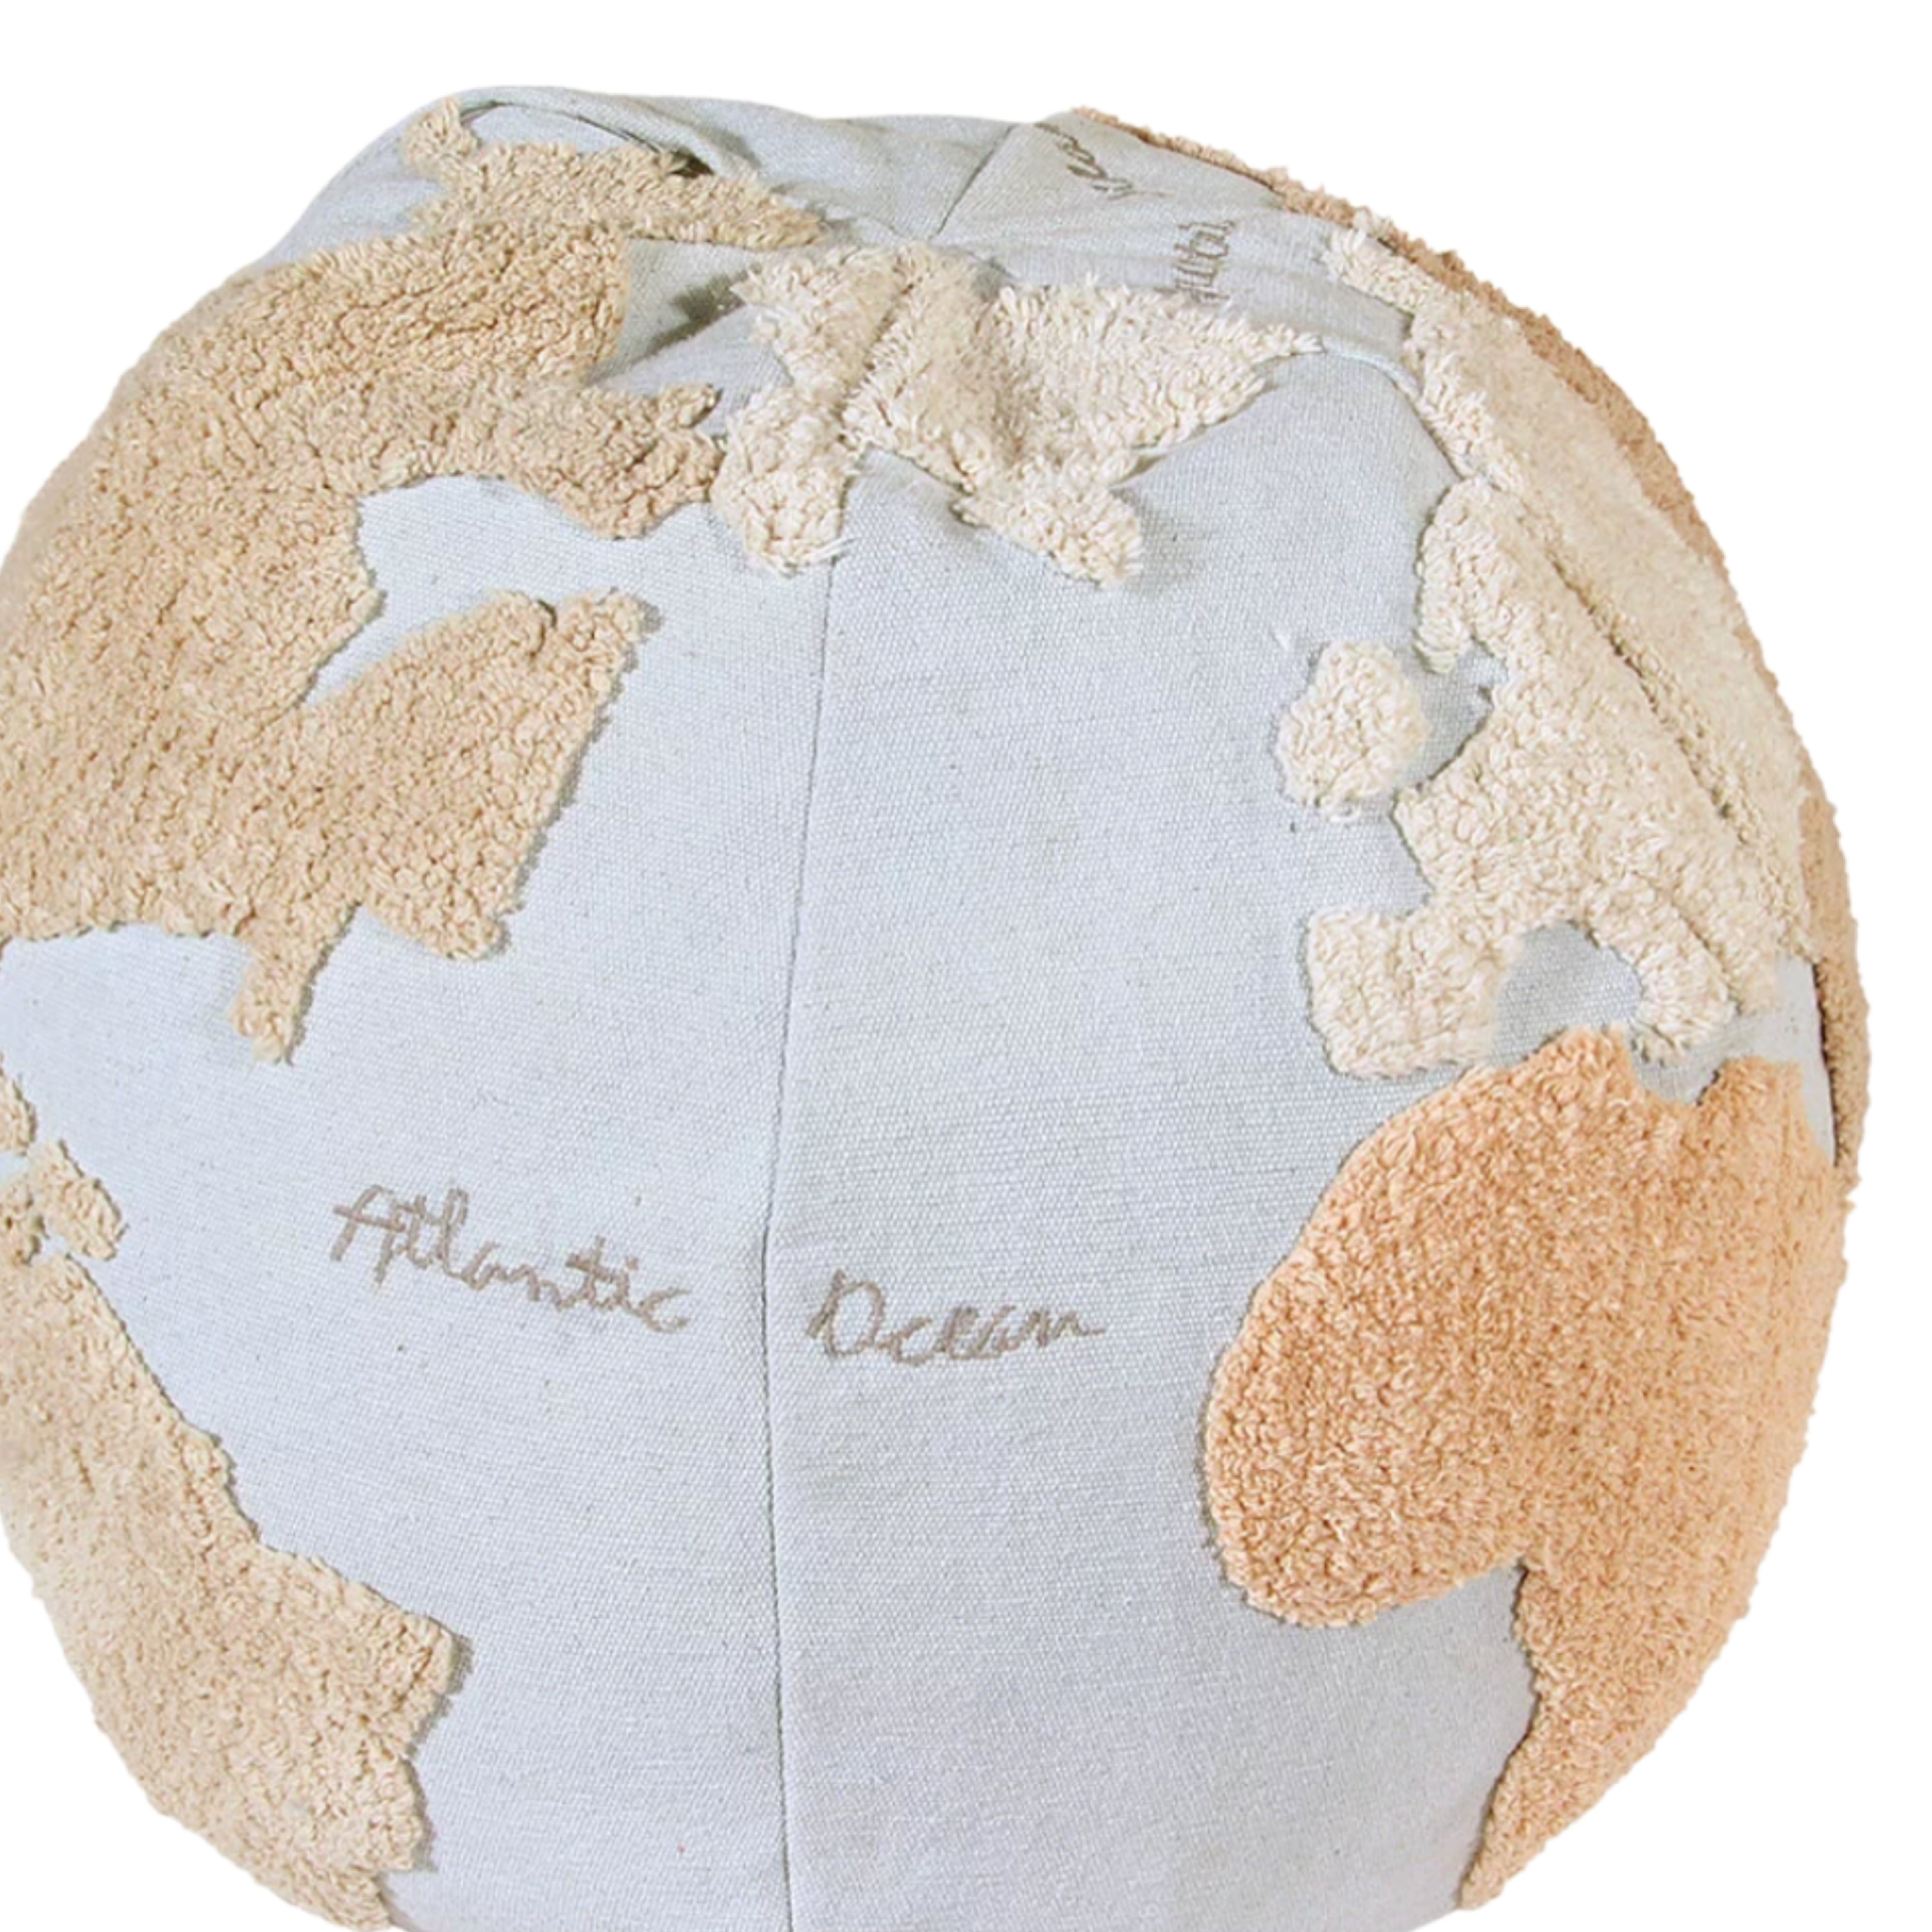 world-map-globe-pouf-kids-lorena-canals